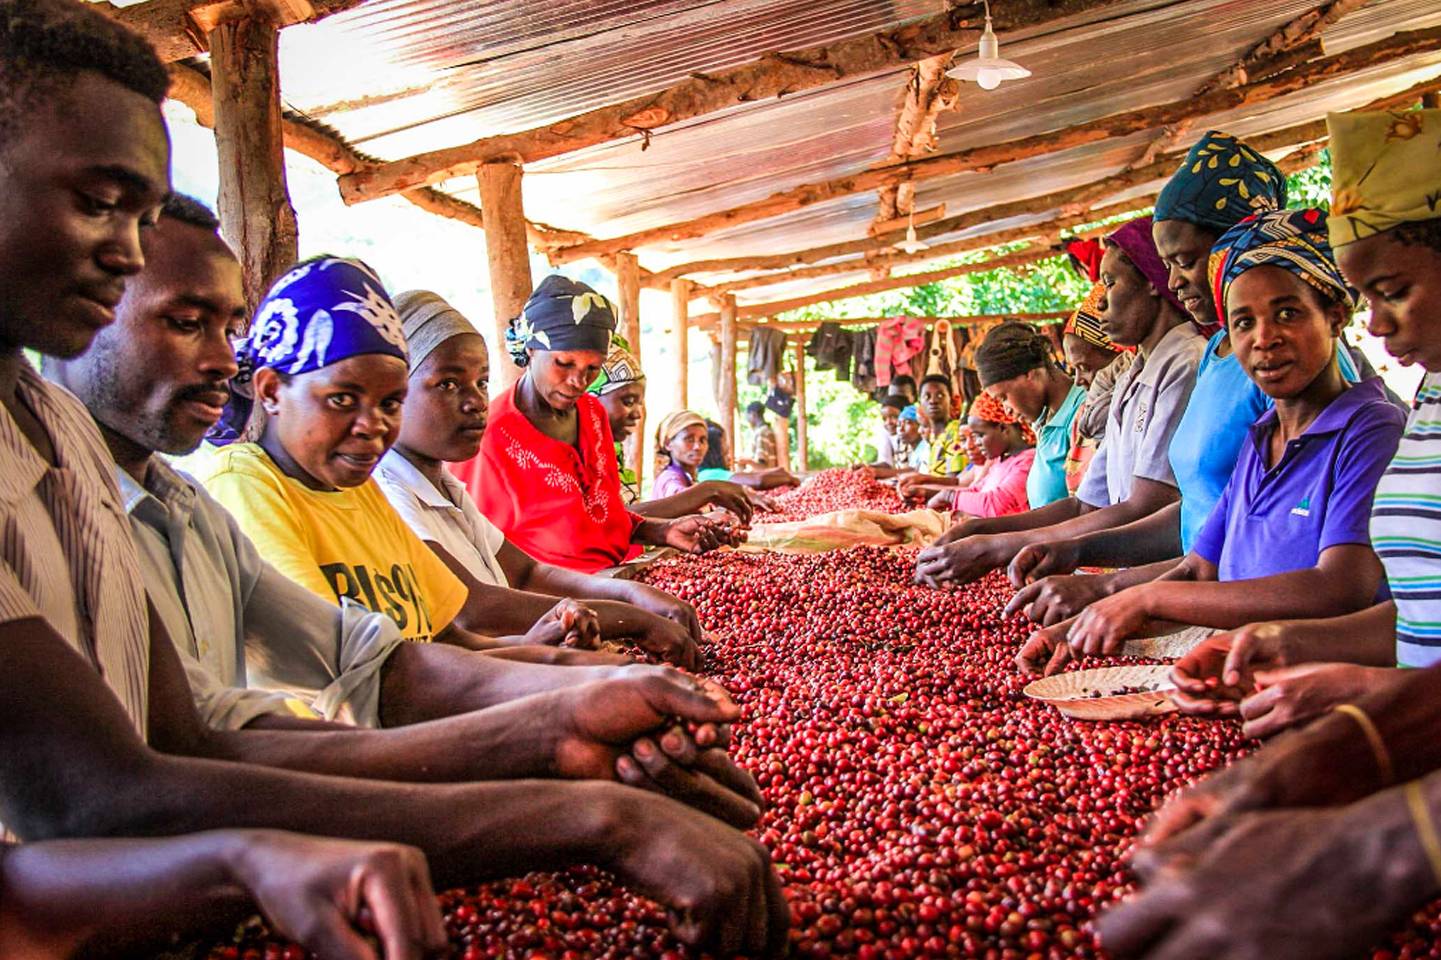 Характеристика кофе из Руанды